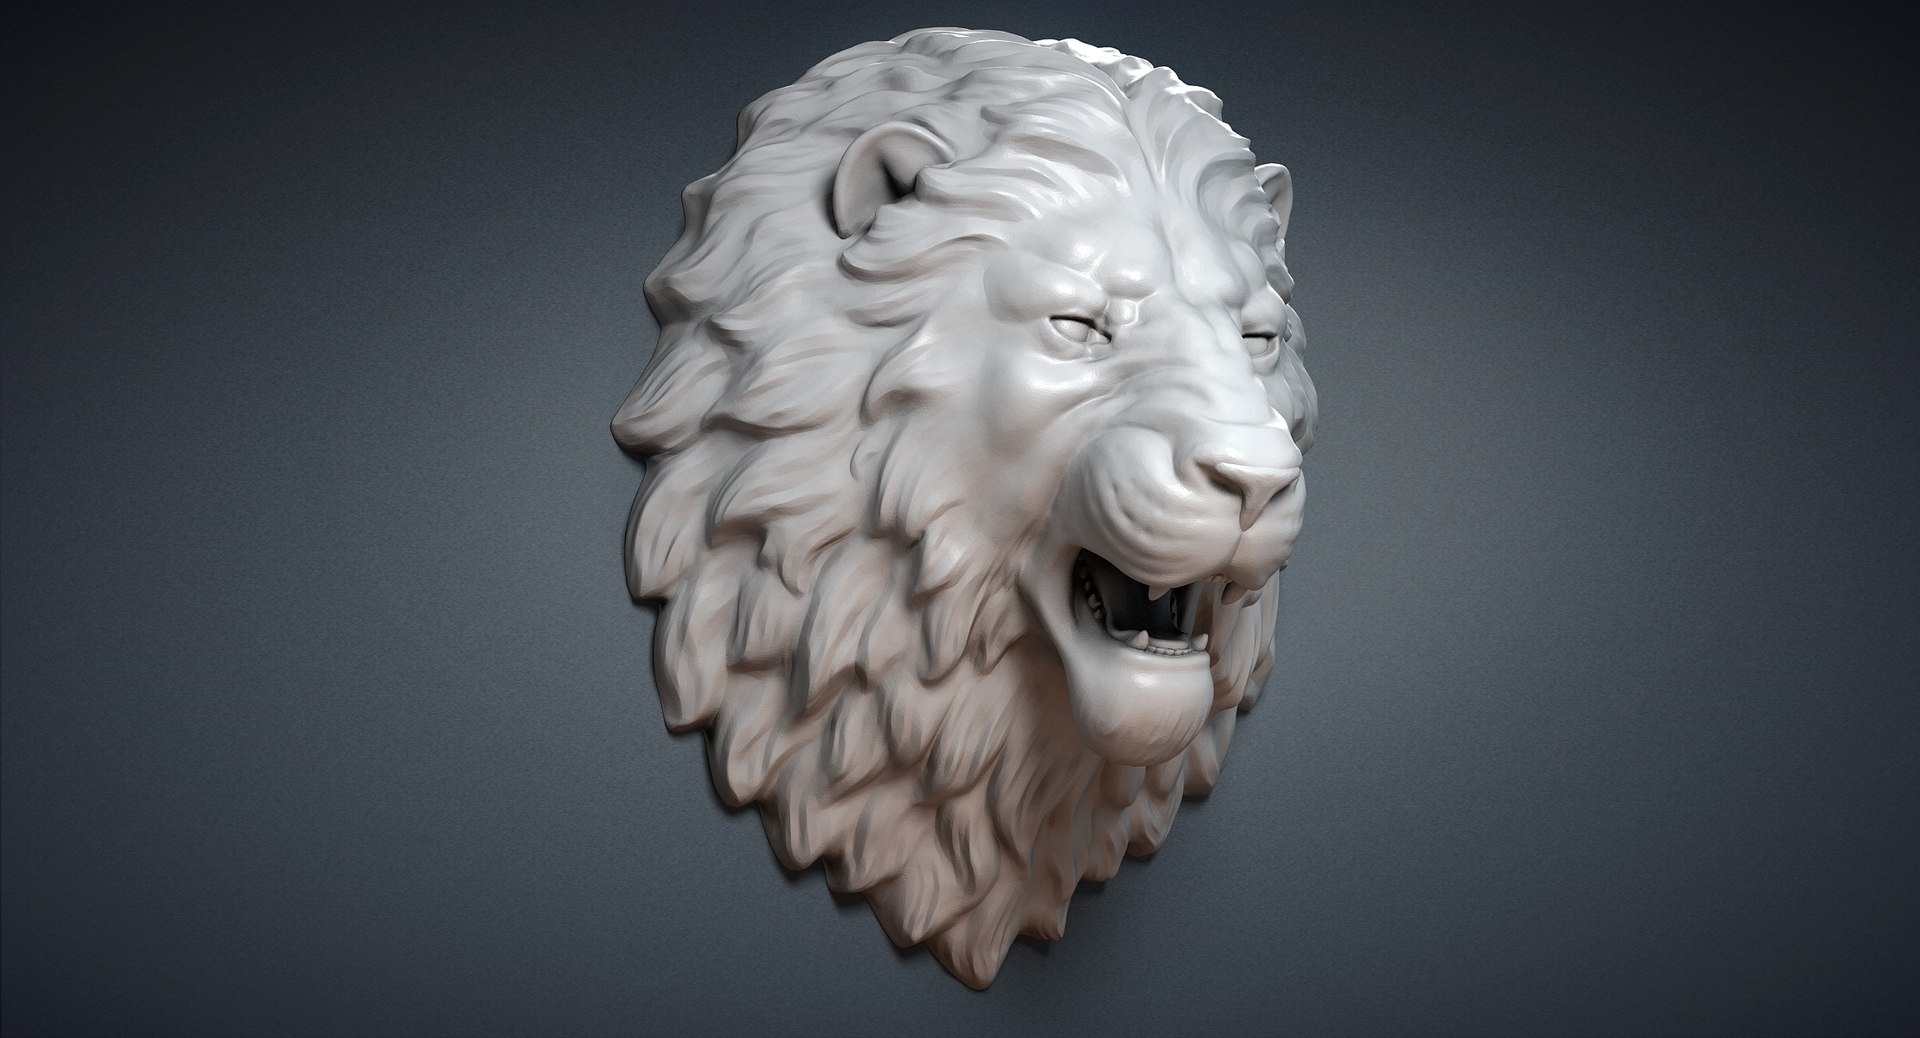 lion head 3d model https://p.turbosquid.com/ts-thumb/Q2/ZltmDy/oBUzR4uc/3dlionheadsculpture02/jpg/1478544773/1920x1080/fit_q87/a8a6bb39790921a82e94d639935b8bada8bb1621/3dlionheadsculpture02.jpg